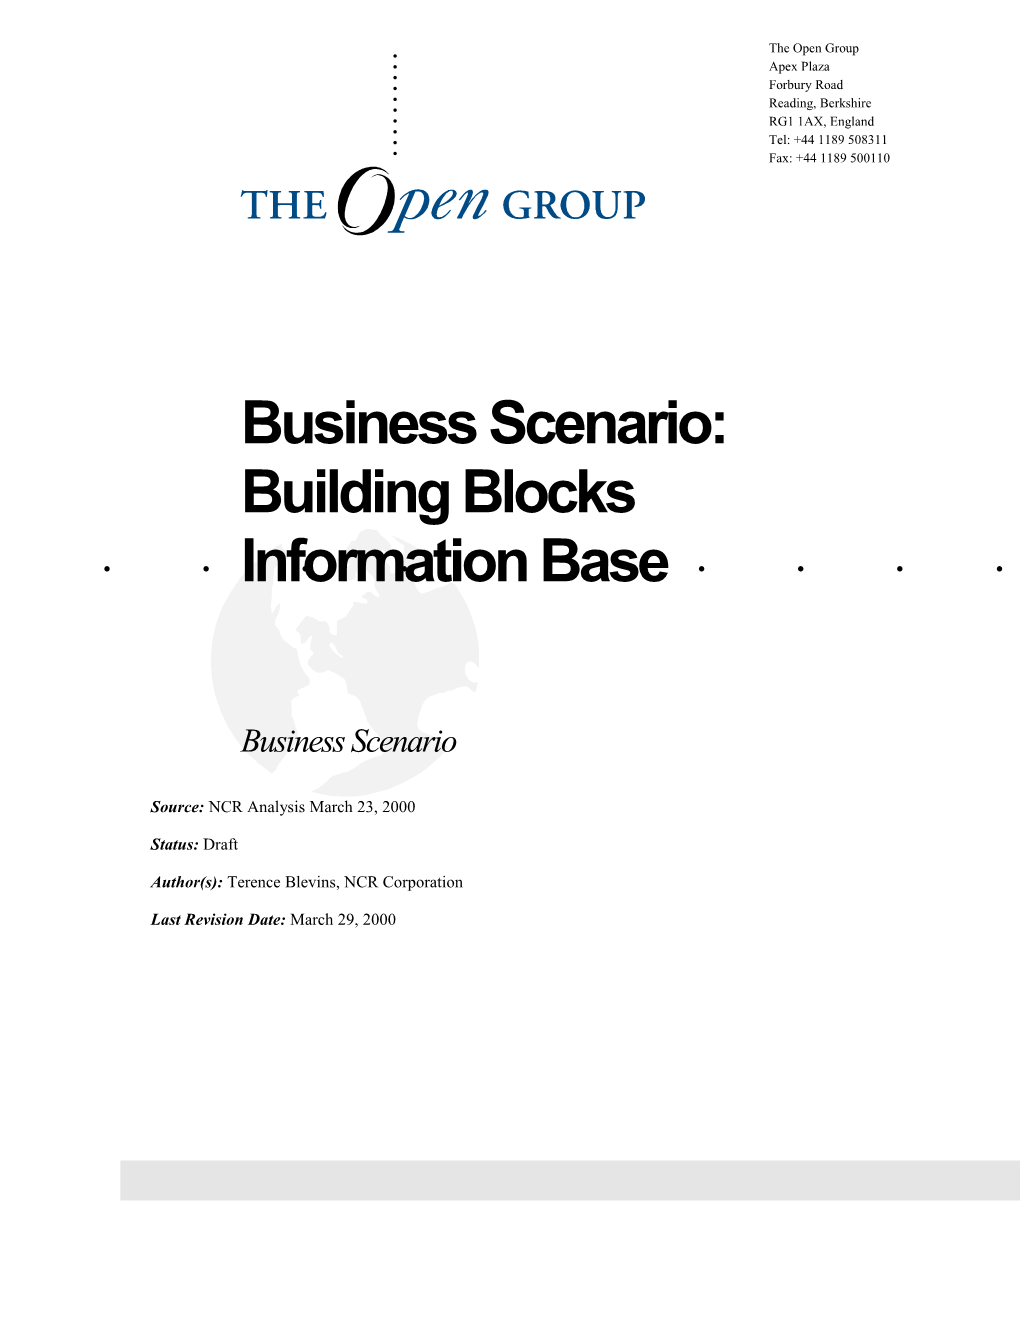 Business Scenario: Building Blocks Information Base